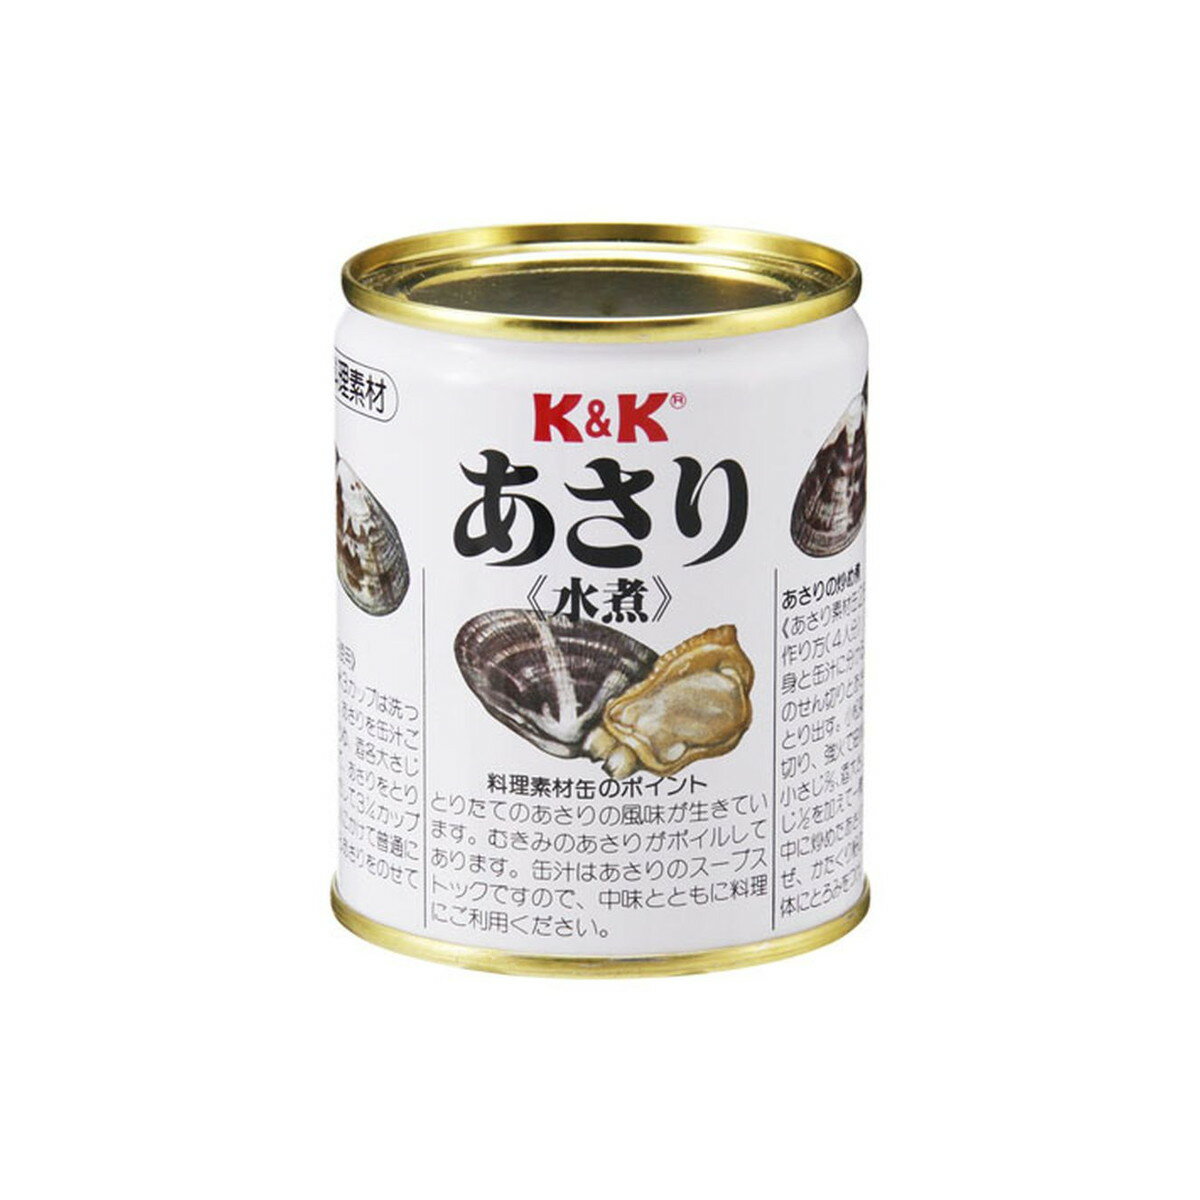 【送料込】国分 K&K あさり 水煮 F7号缶 225g 1個